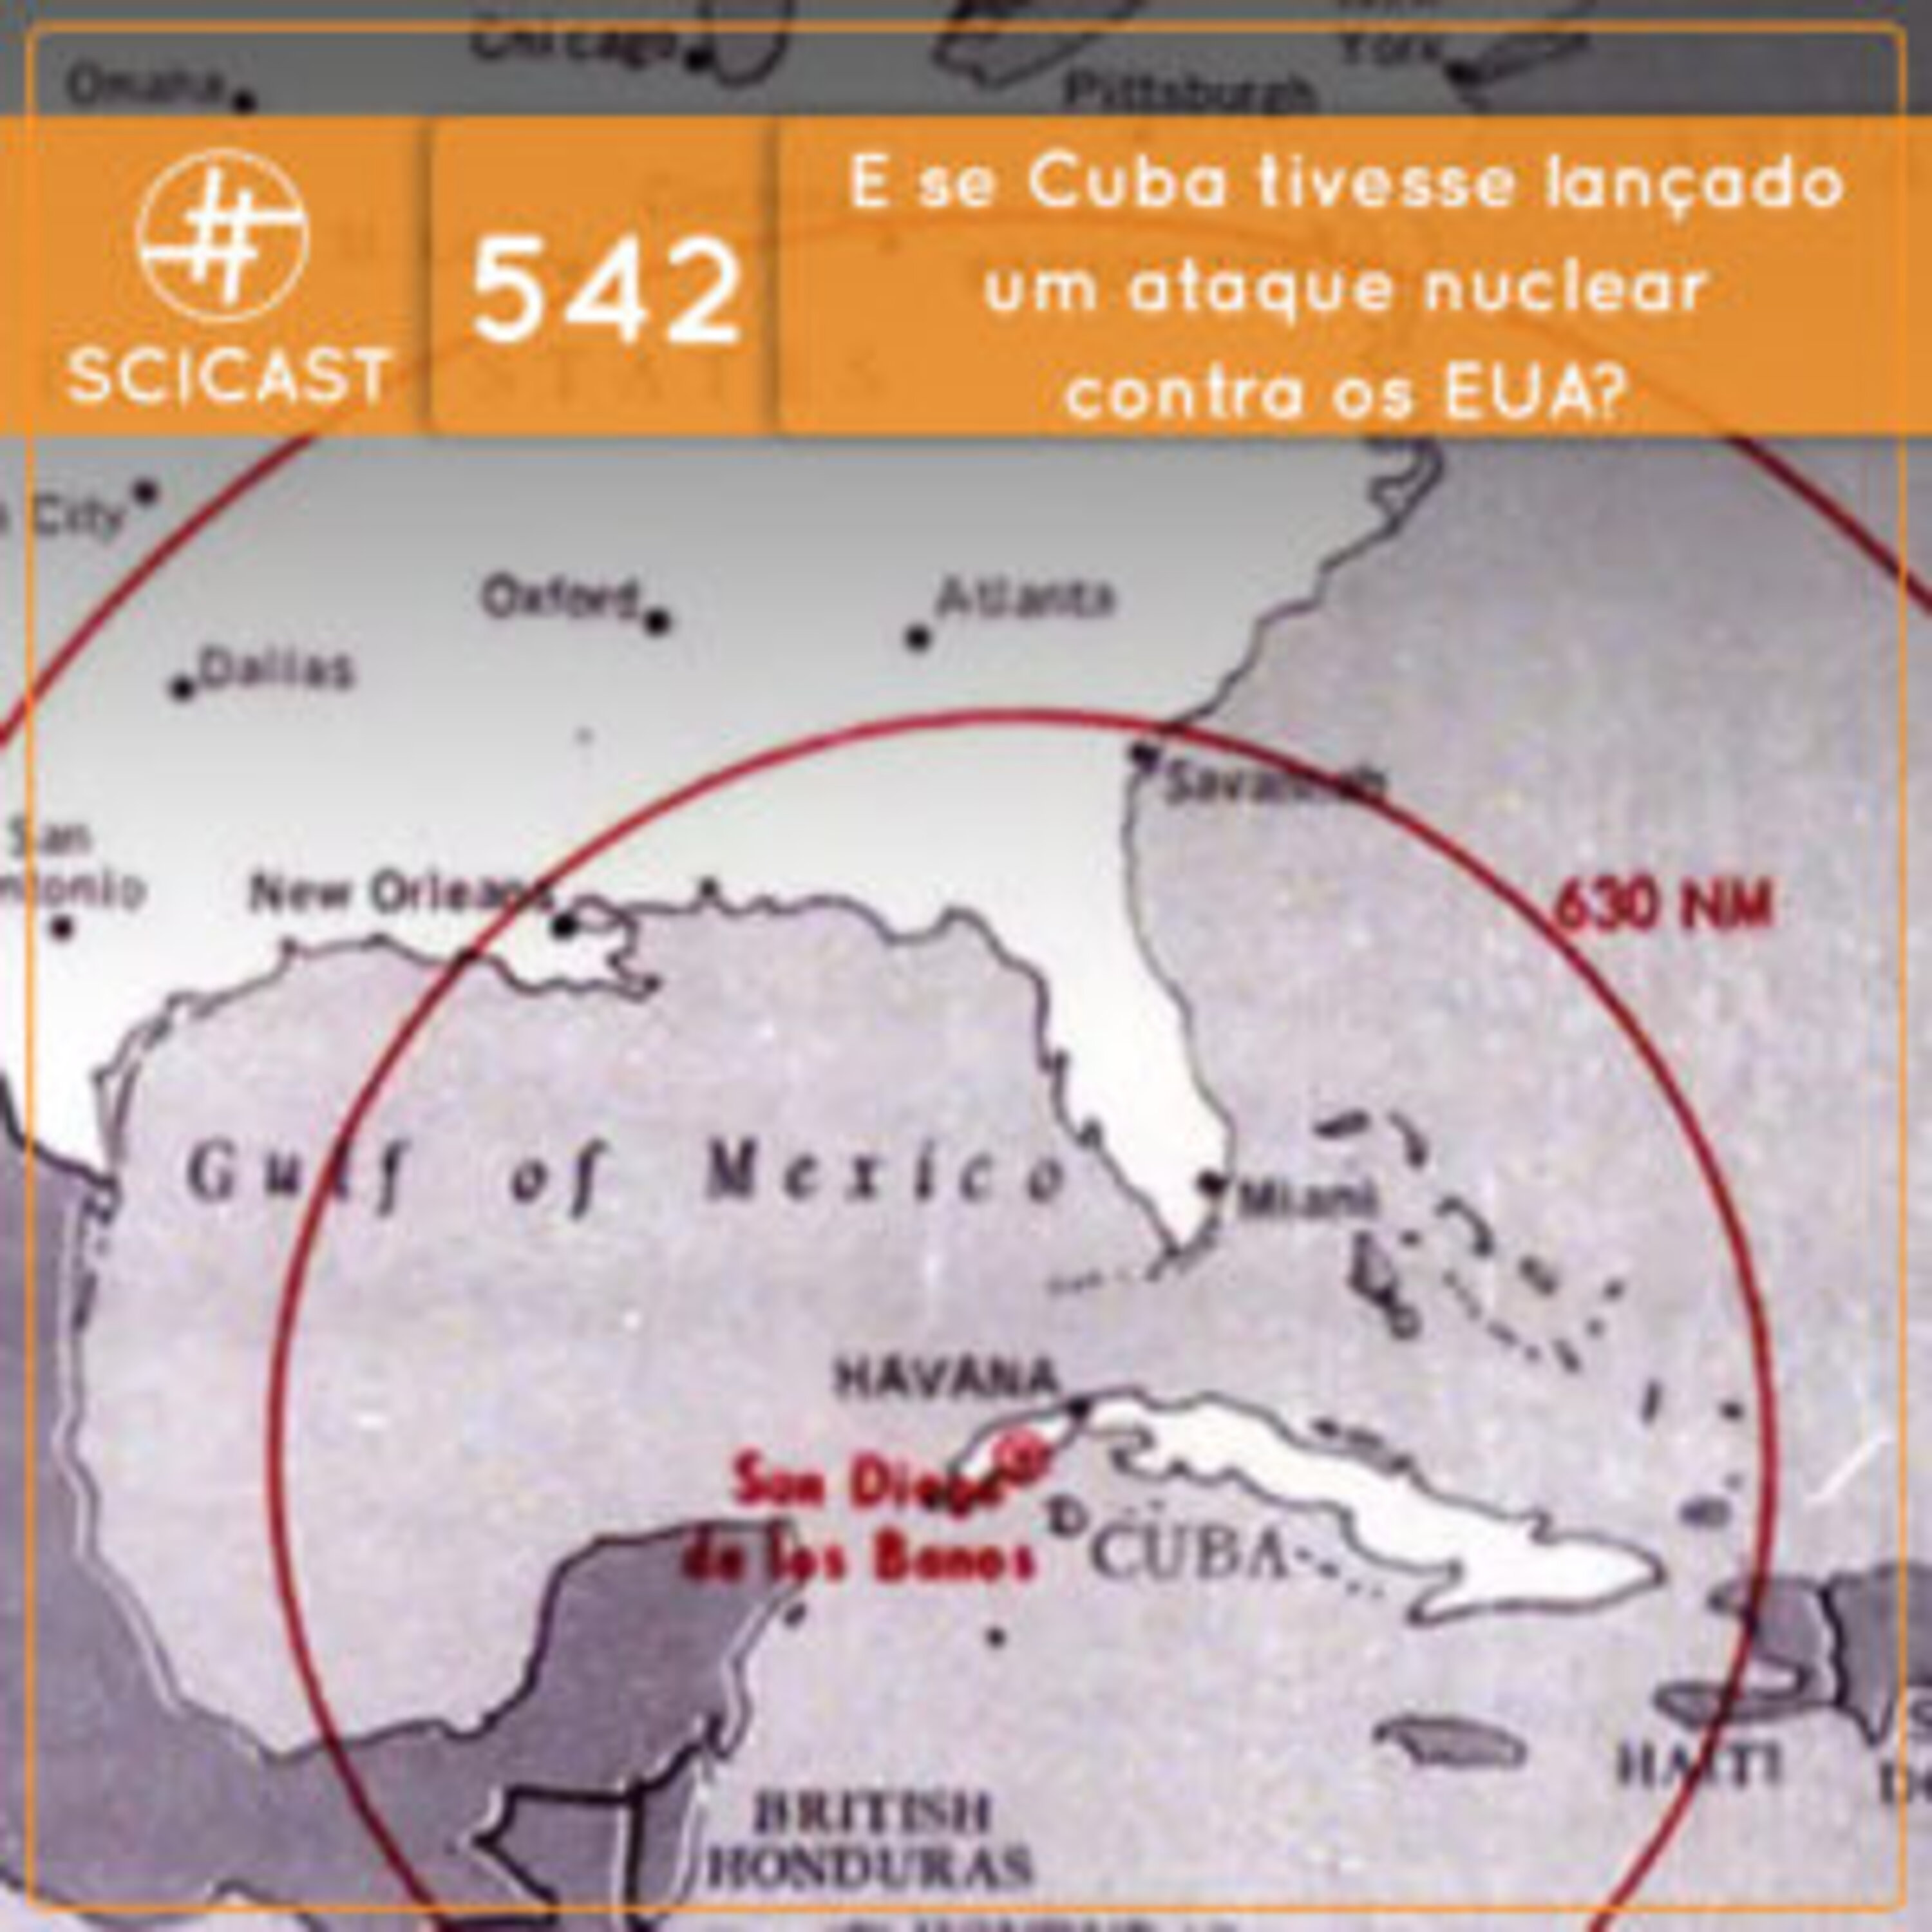 Contrafactual: e se Cuba tivesse lançado um ataque nuclear contra os EUA?  (SciCast #542)